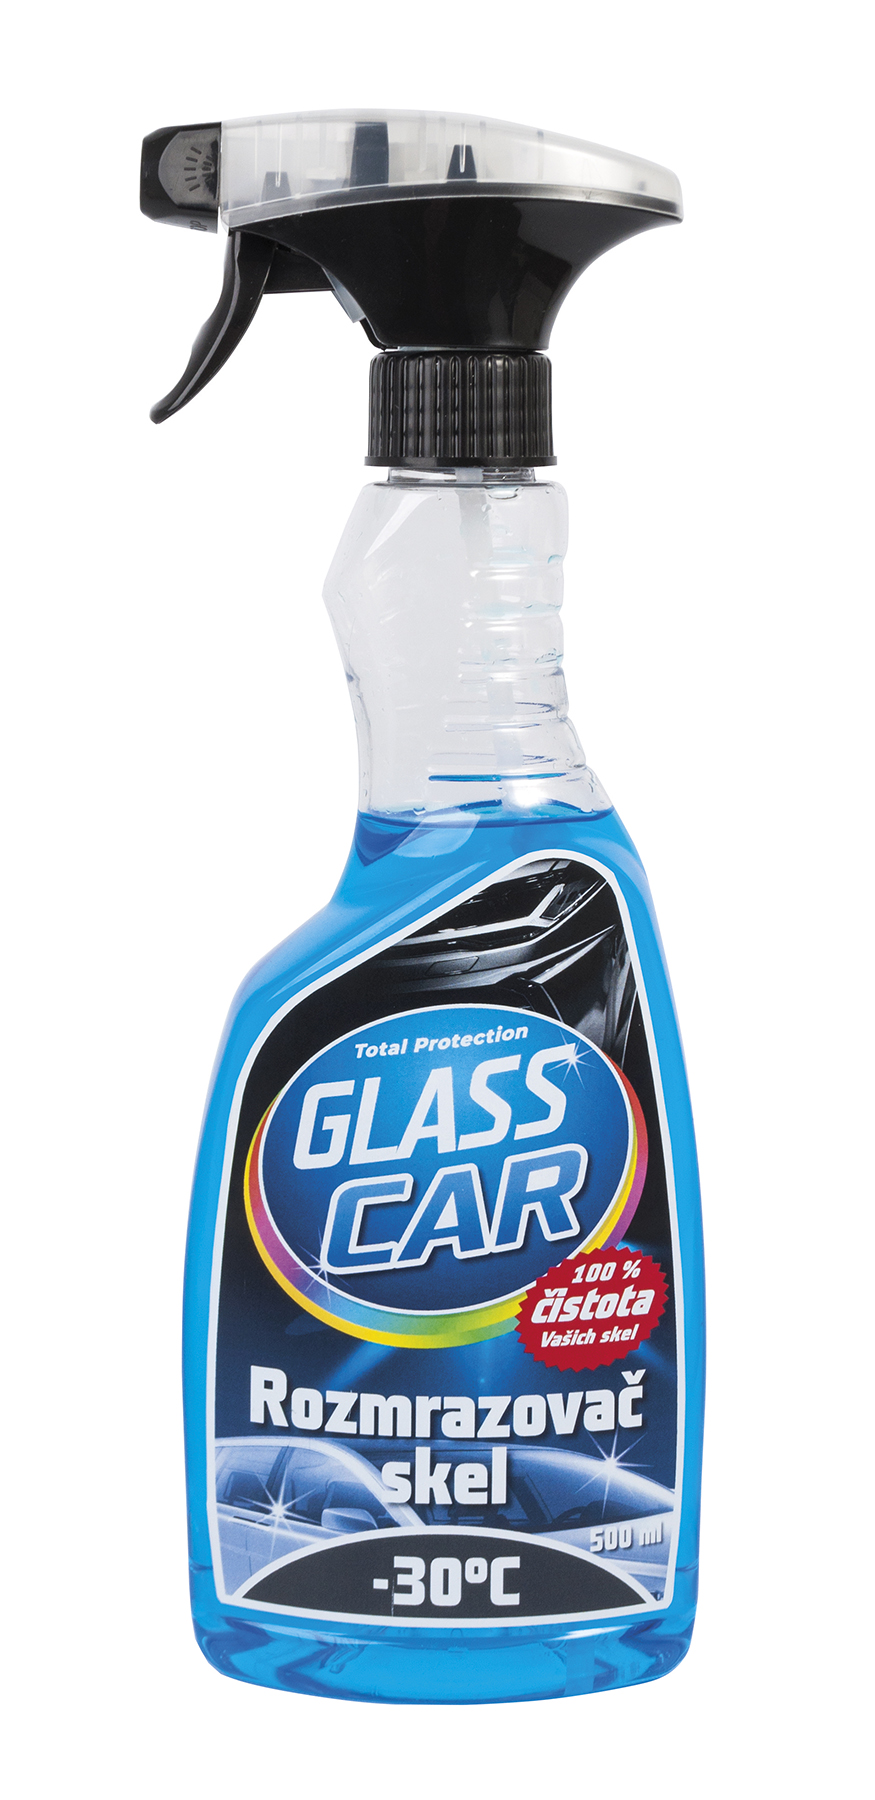 GlassCar rozmrazovač skel